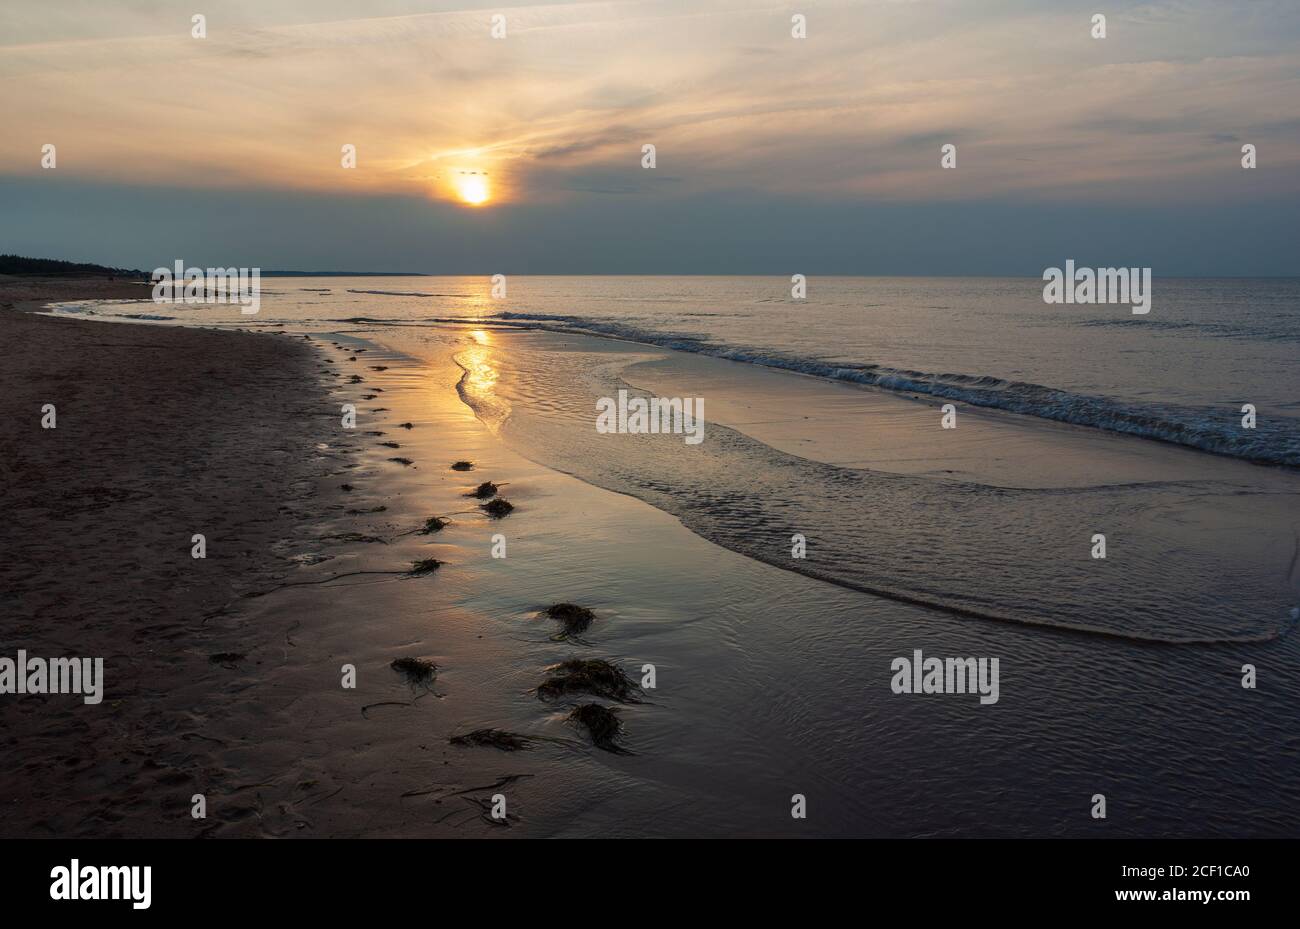 Scintillent le soleil sur les vagues. Disque solaire transitoire éblouit au-dessus d'un horizon sombre. Cavendish Beach, parc national de l'Île-du-Prince-Édouard, Canada Banque D'Images